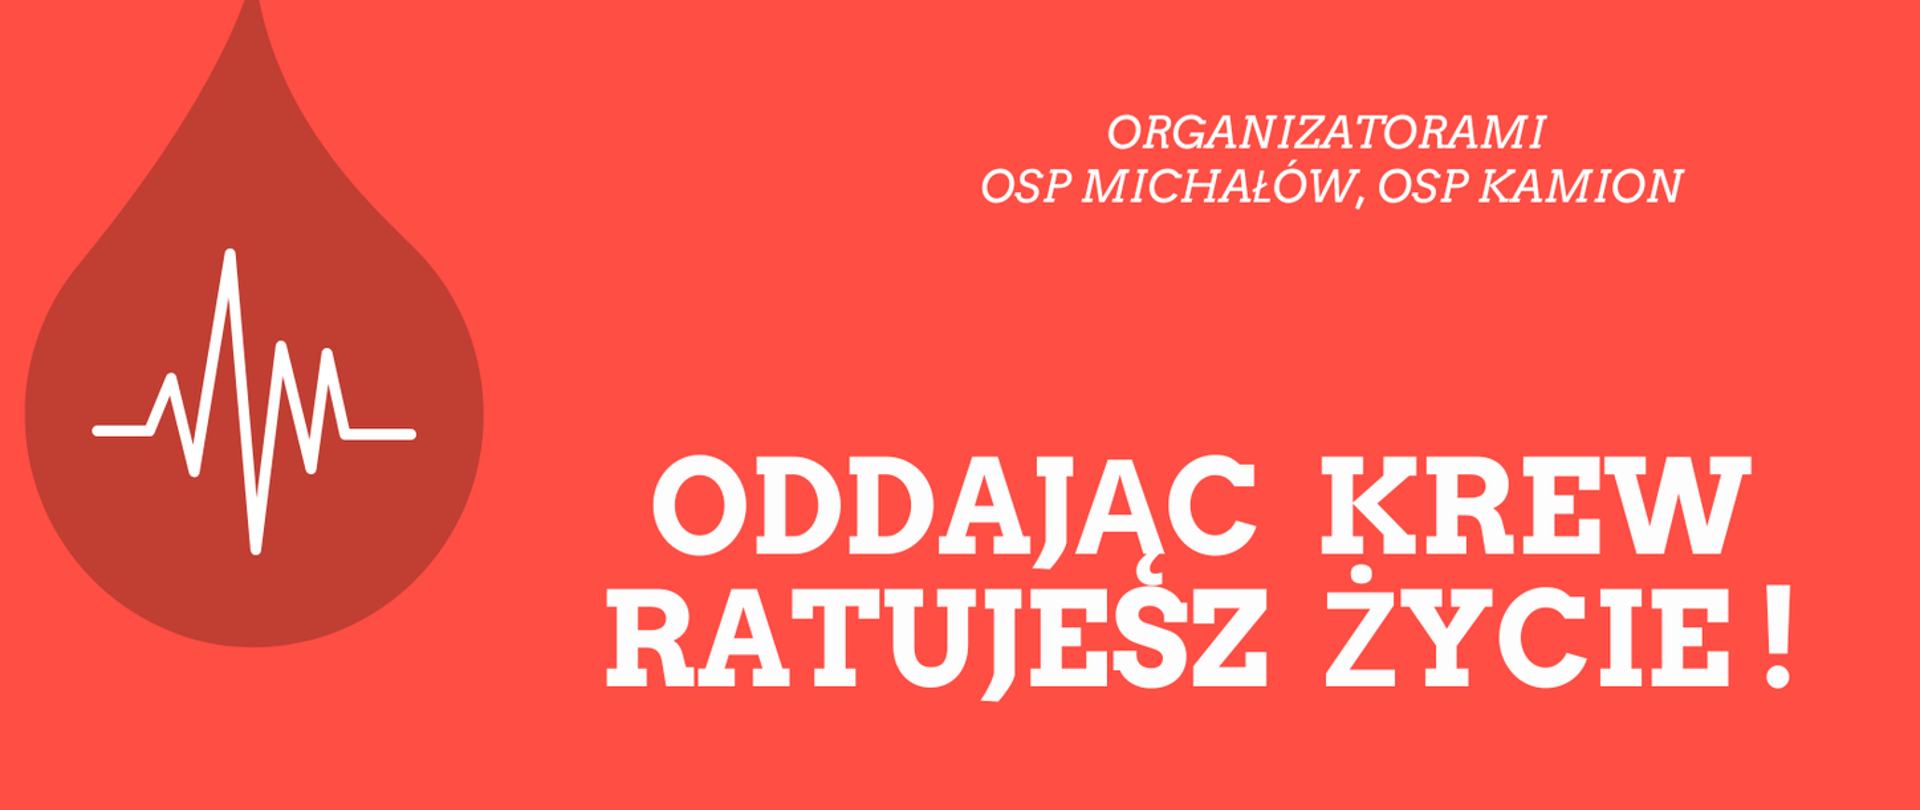 Plakat akcji krwiodawstwa organizowanej przez OSP Michałów i OSP Kamion